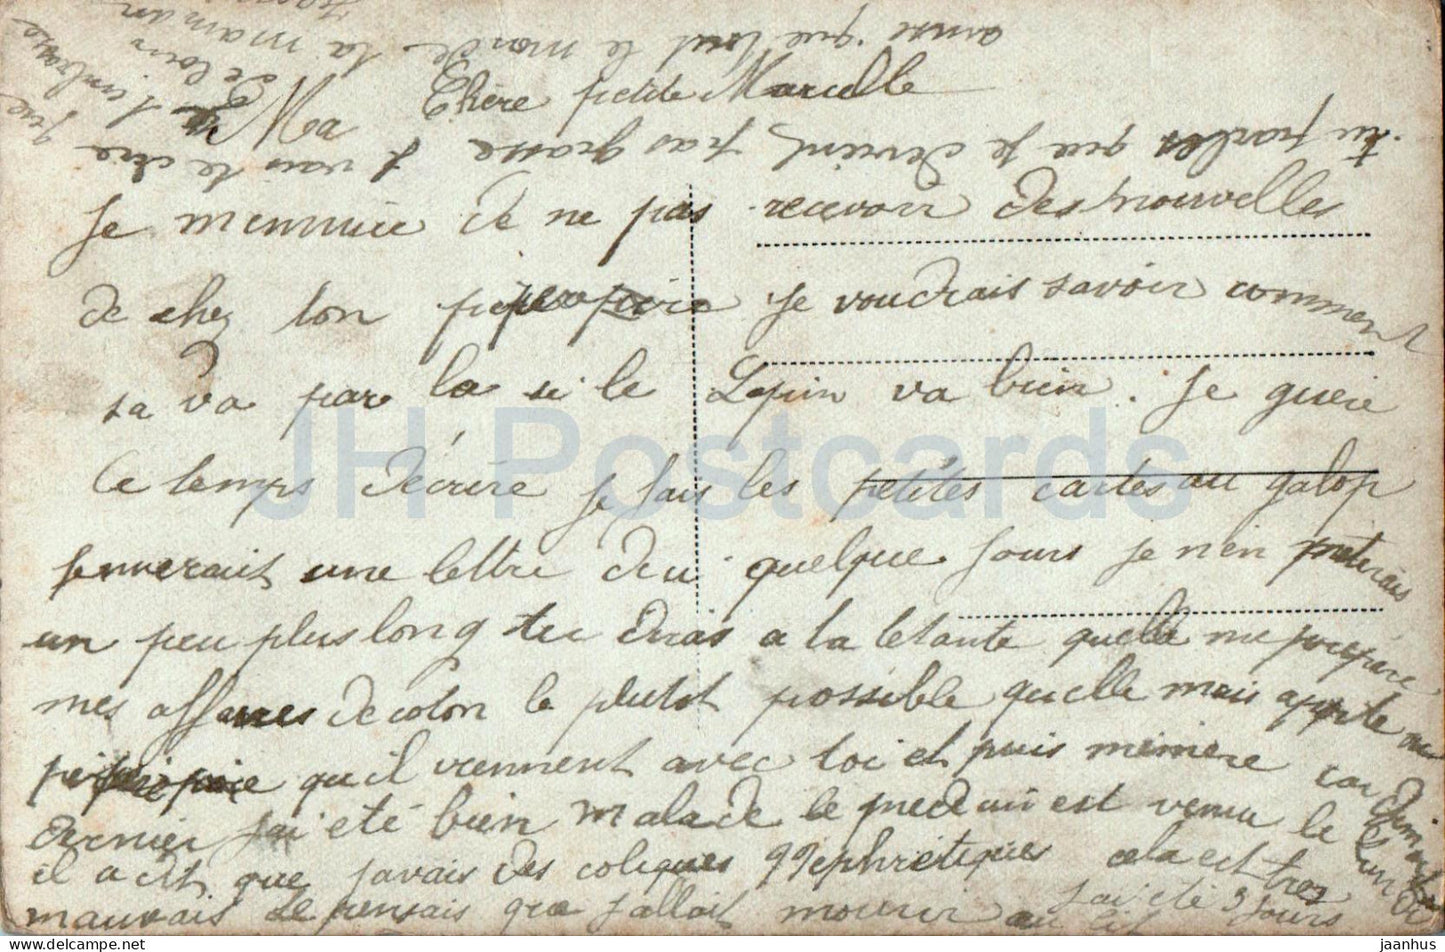 Si cette image a su Vous plaire, dites moi ce qu'elle vous suggère - femme - chat - 1834/4 - carte postale ancienne - France - oblitéré 